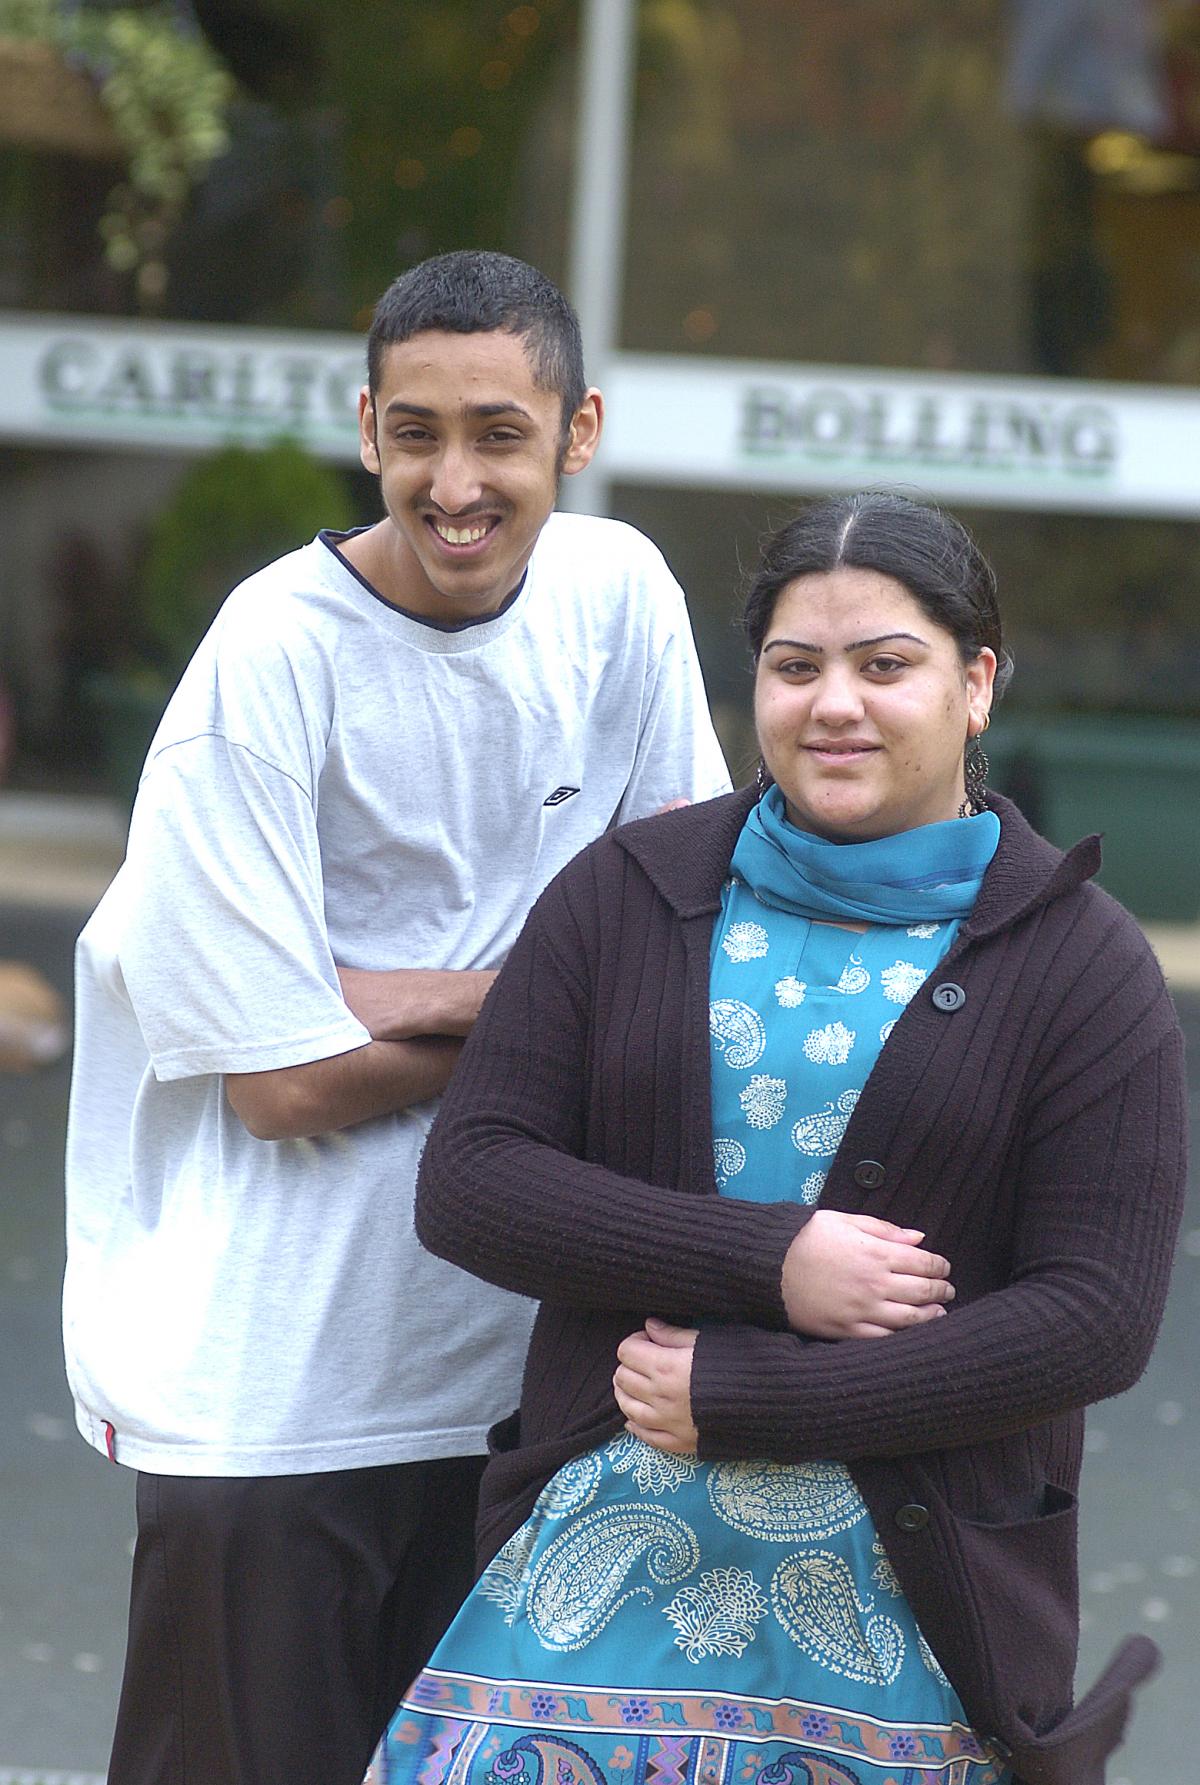 Carlton Bolling GCSE success 2007